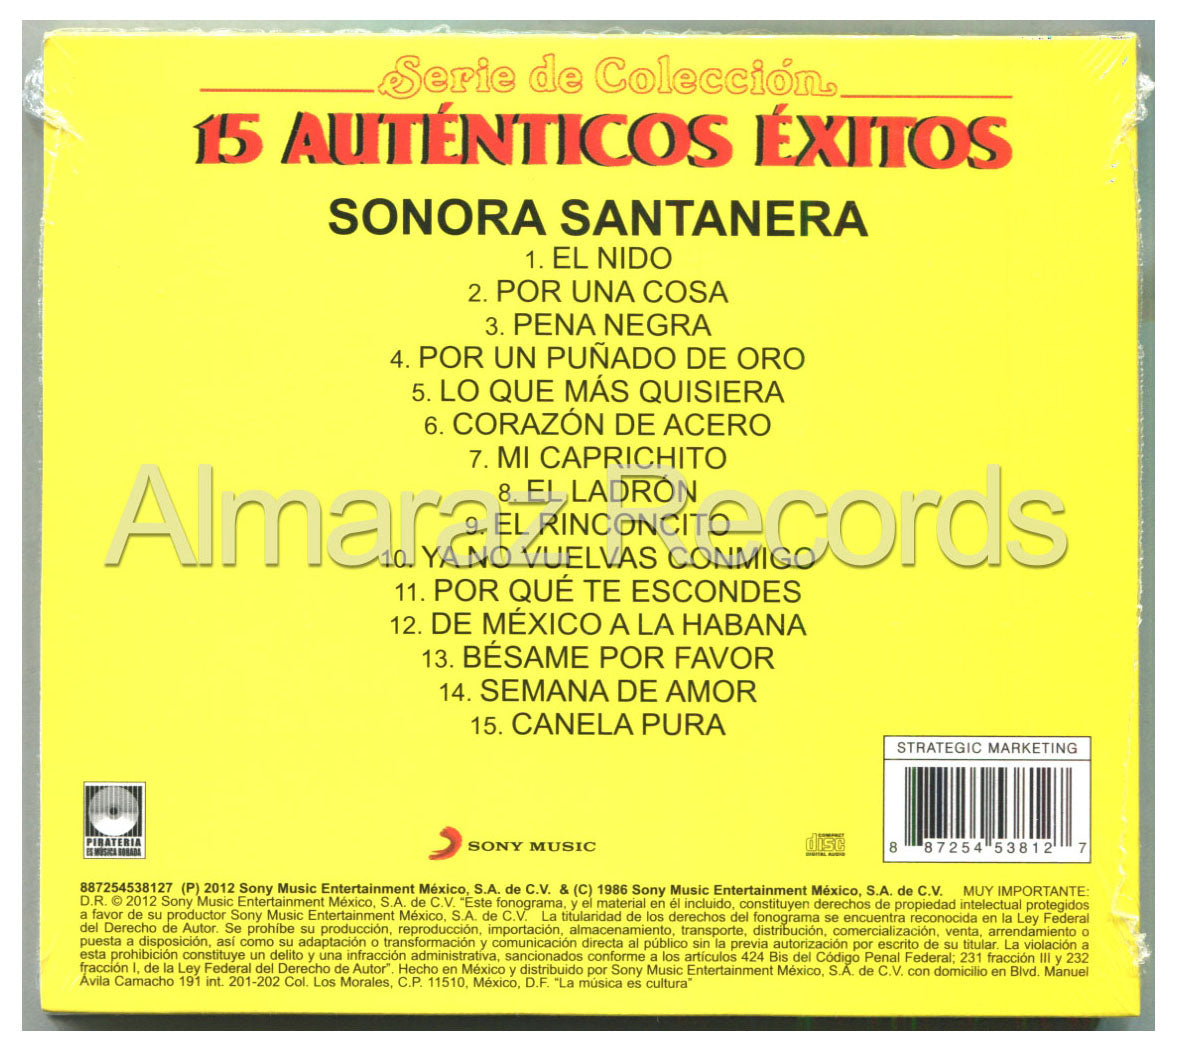 La Sonora Santanera 15 Autenticos Exitos Vol. III CD (2012 Digipak) - Almaraz Records | Tienda de Discos y Películas
 - 2